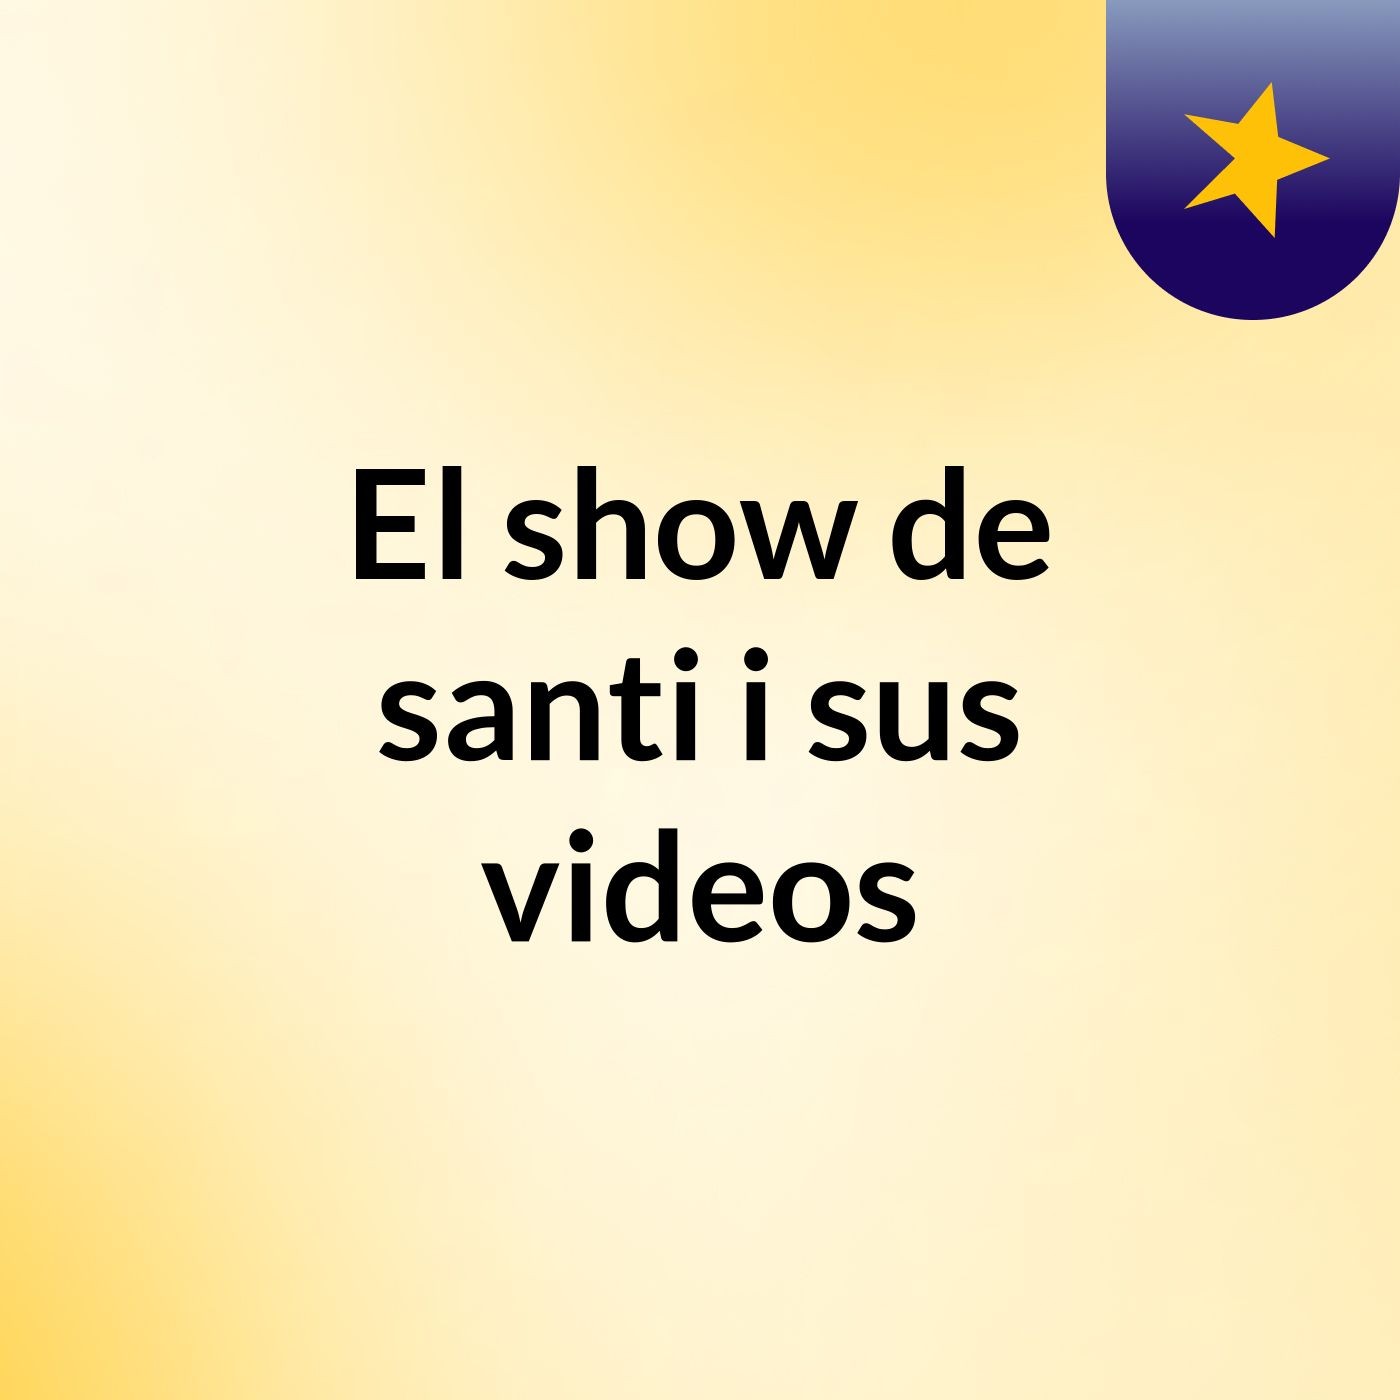 El show de santi i sus videos